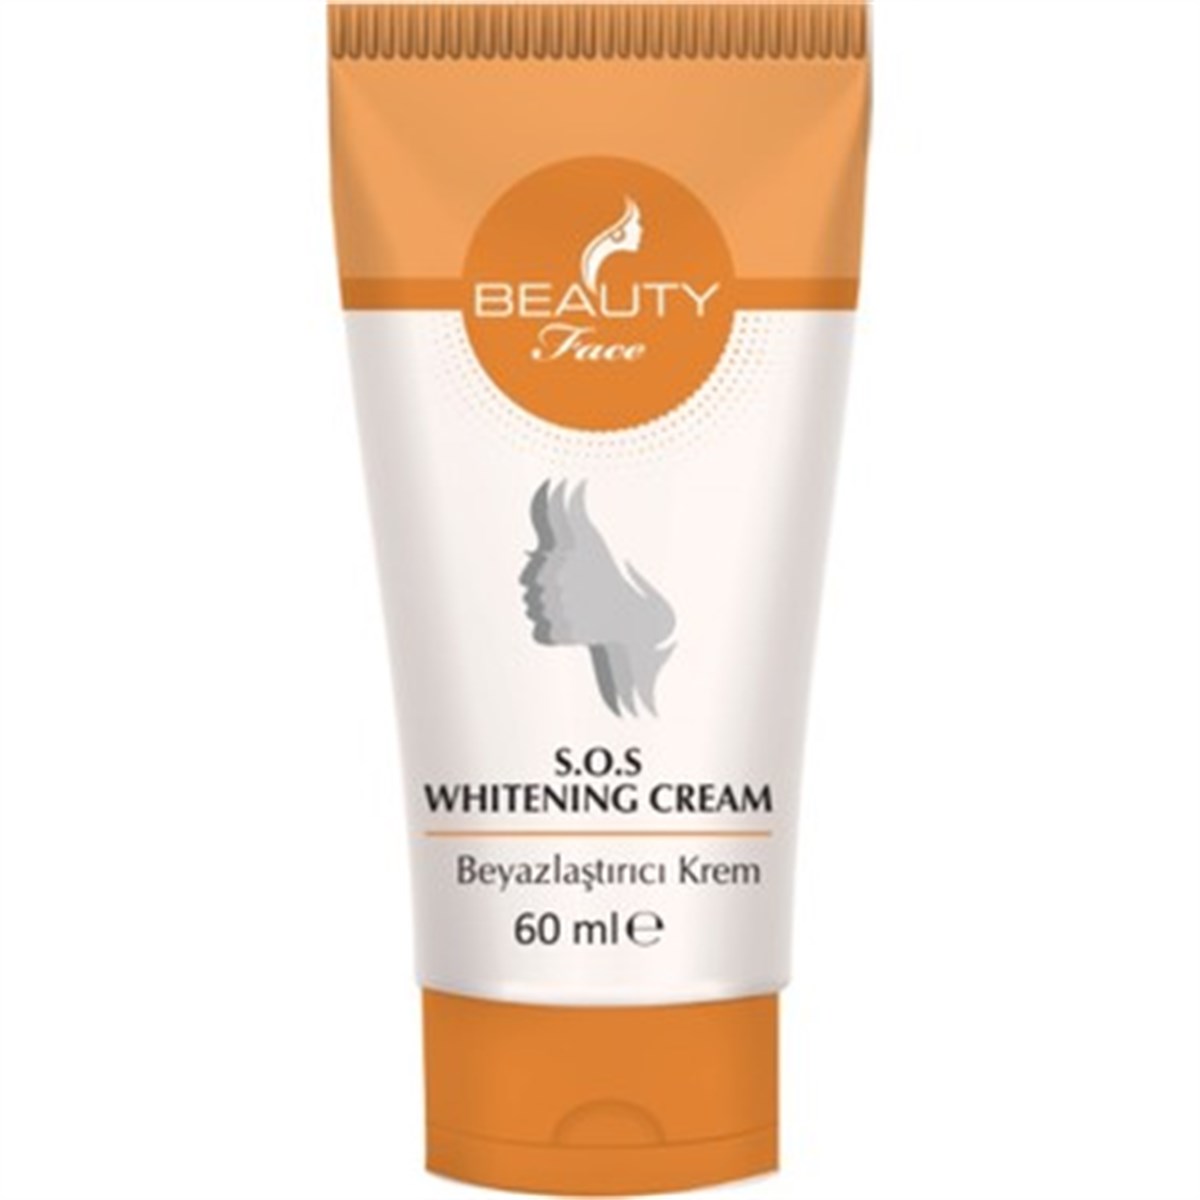 Beauty Face Whitening Cream Beyazlaştırıcı Krem 60 ml DepoEczanem.com |  Dermokozmetik Cilt & Vücut Bakımı, Vitamin & Mineral – Takviye Edici Gıda  ve Reçetesiz Sağlık Ürünleri